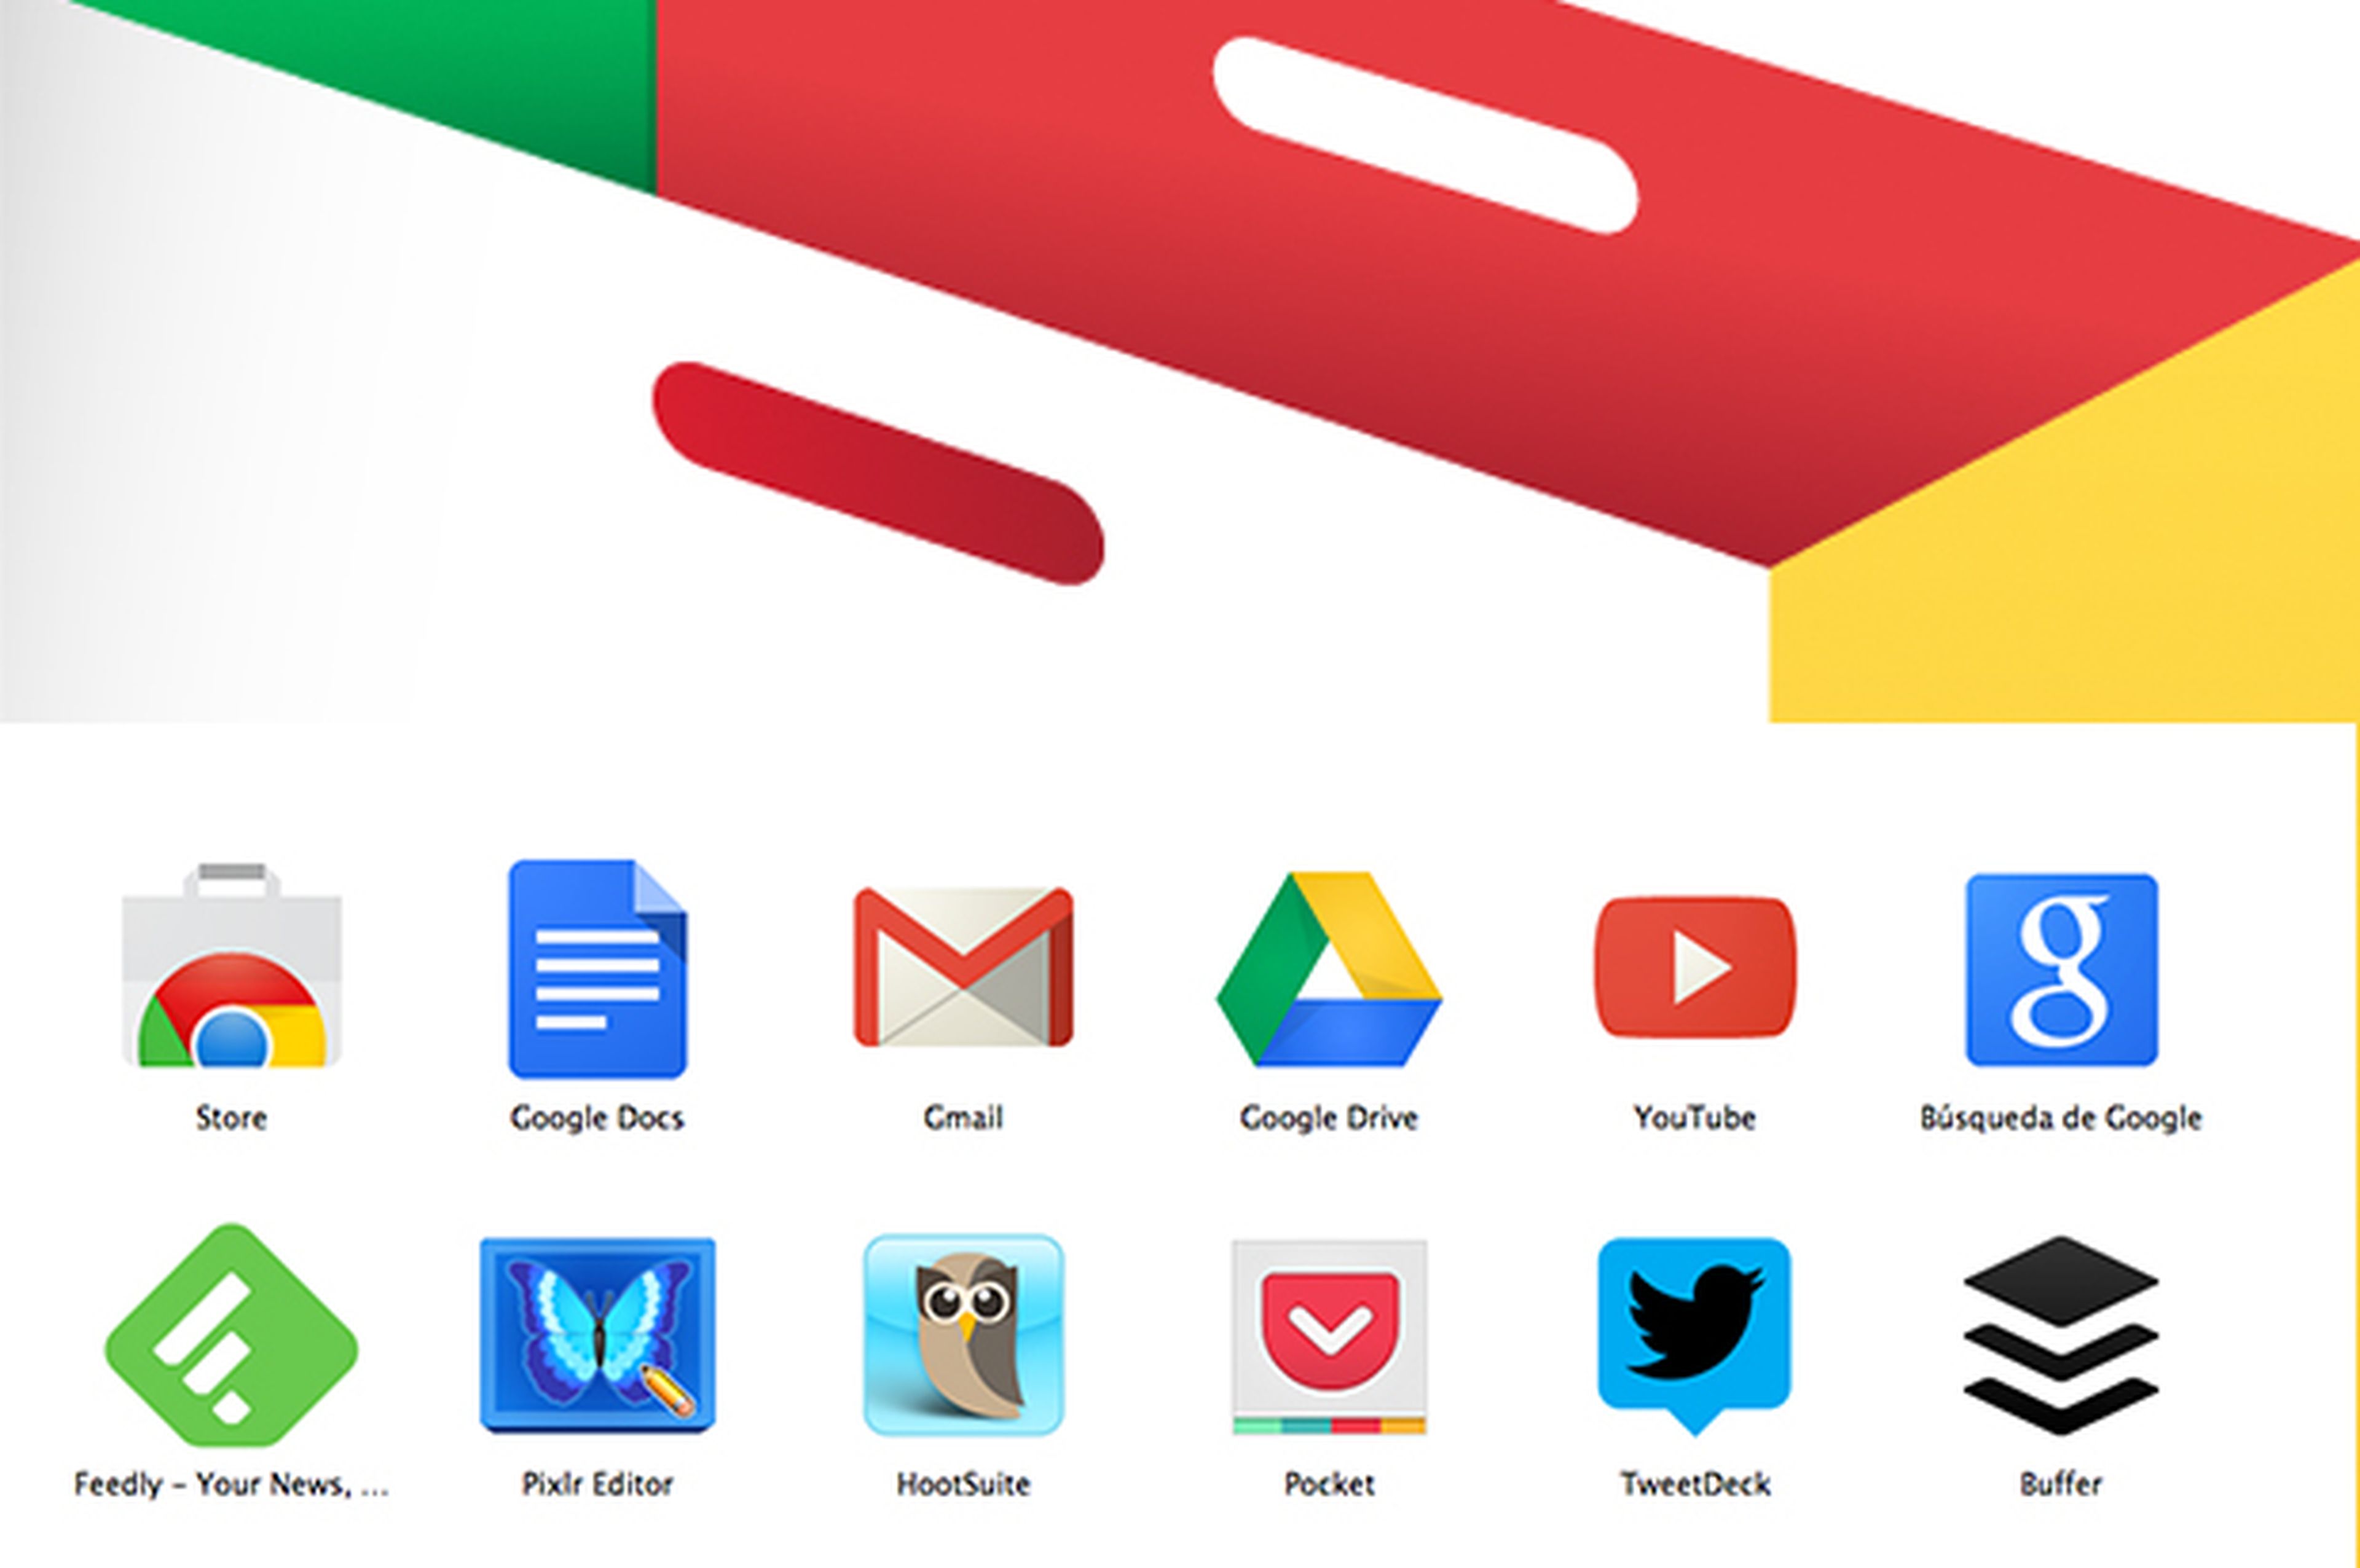 extensiones, plugins y aplicaciones de Google Chrome